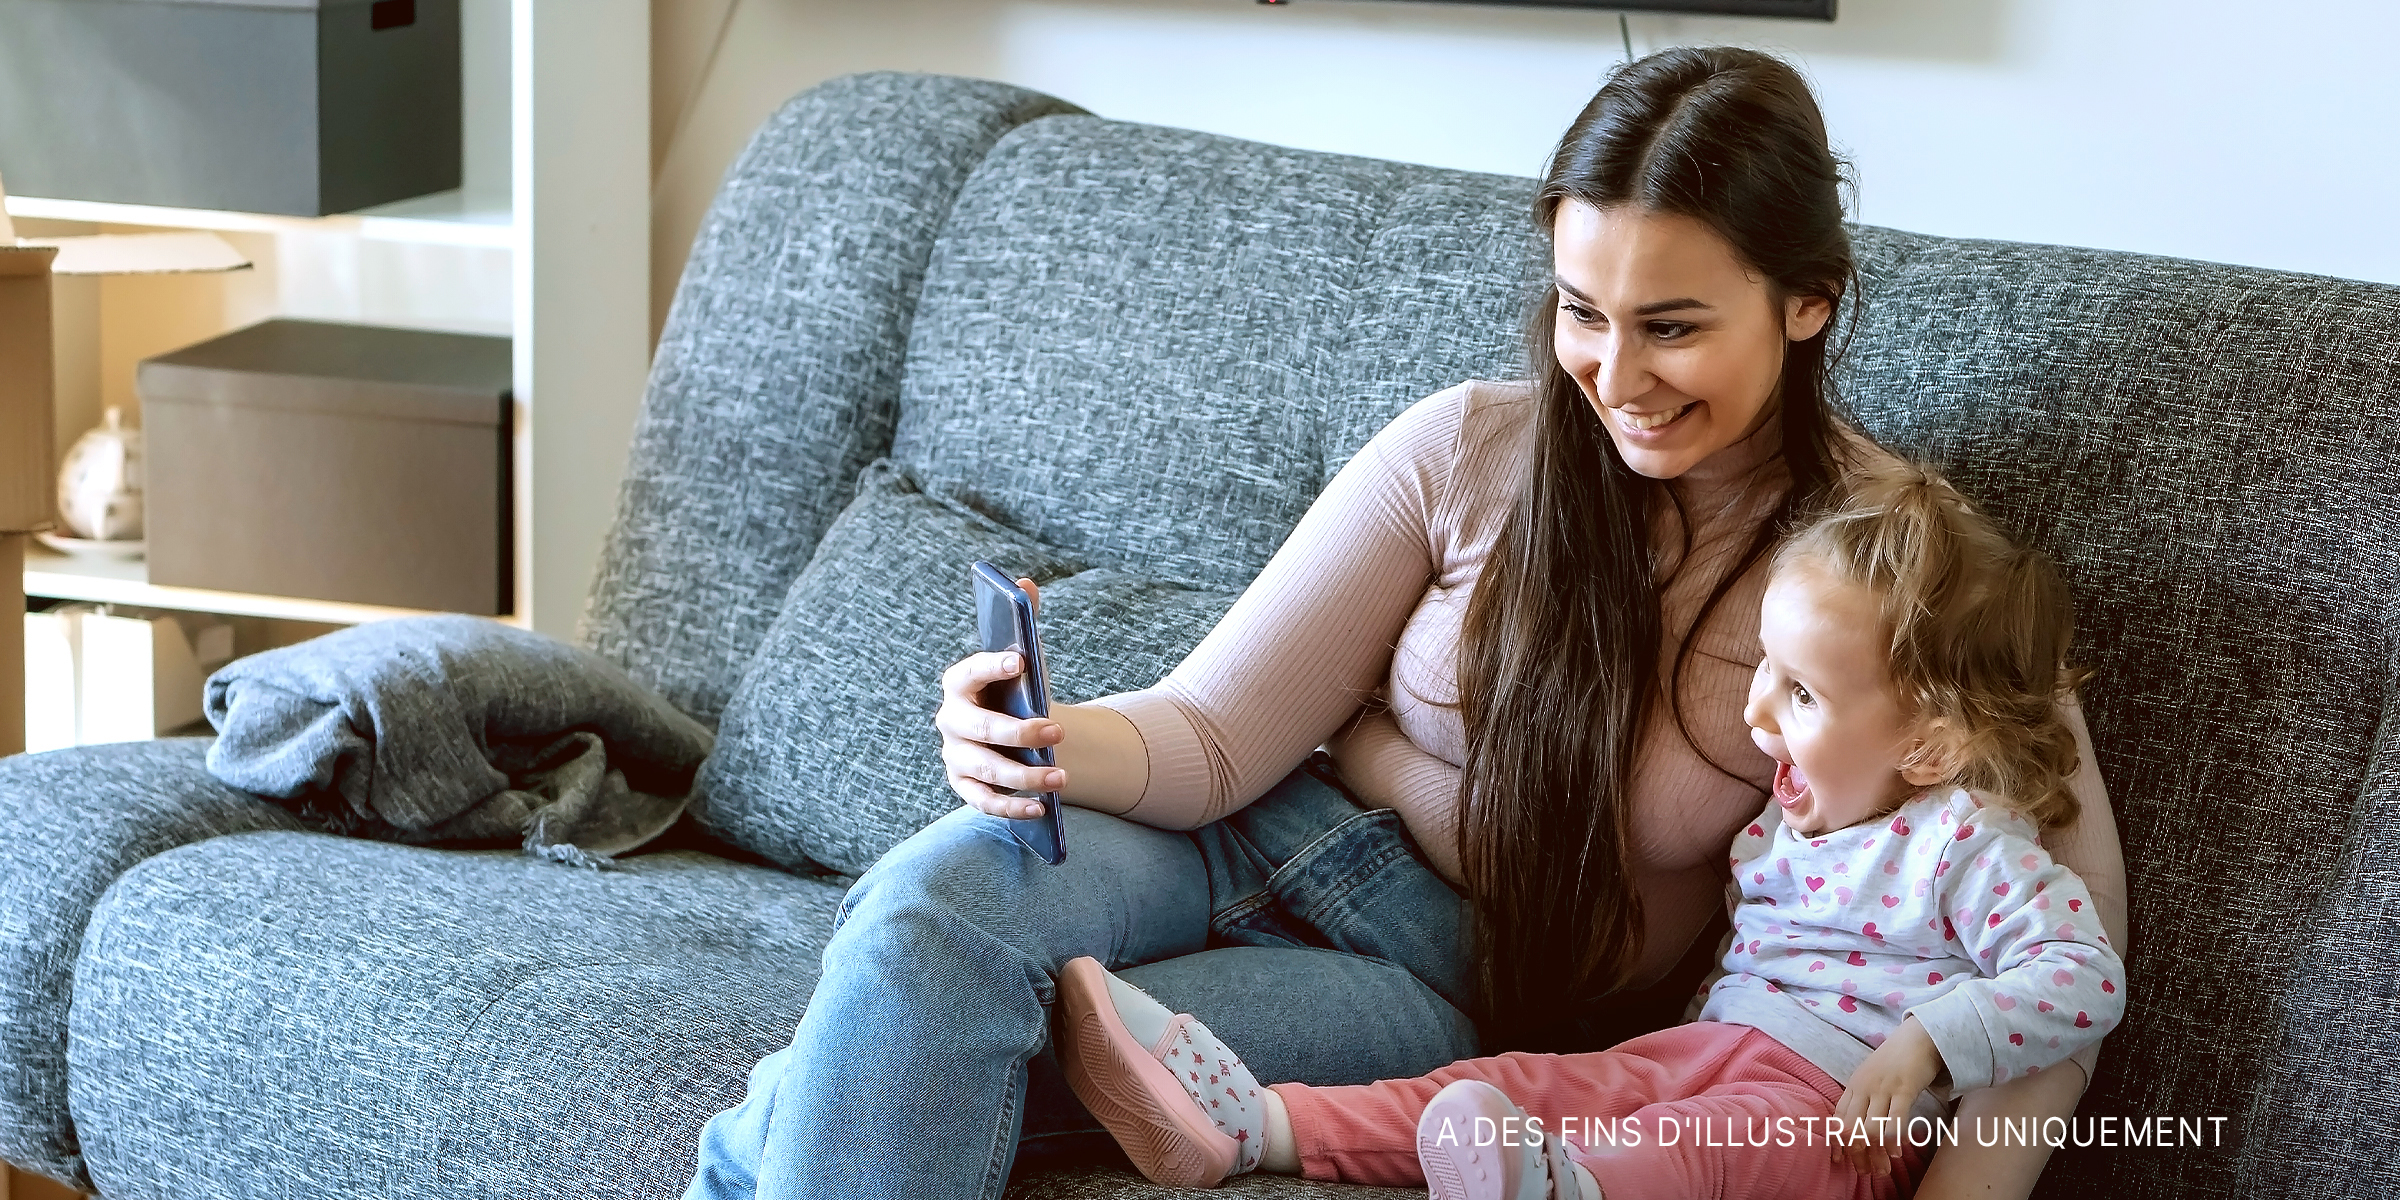 Une femme qui se prend en photo avec un enfant. | Source : Shutterstock